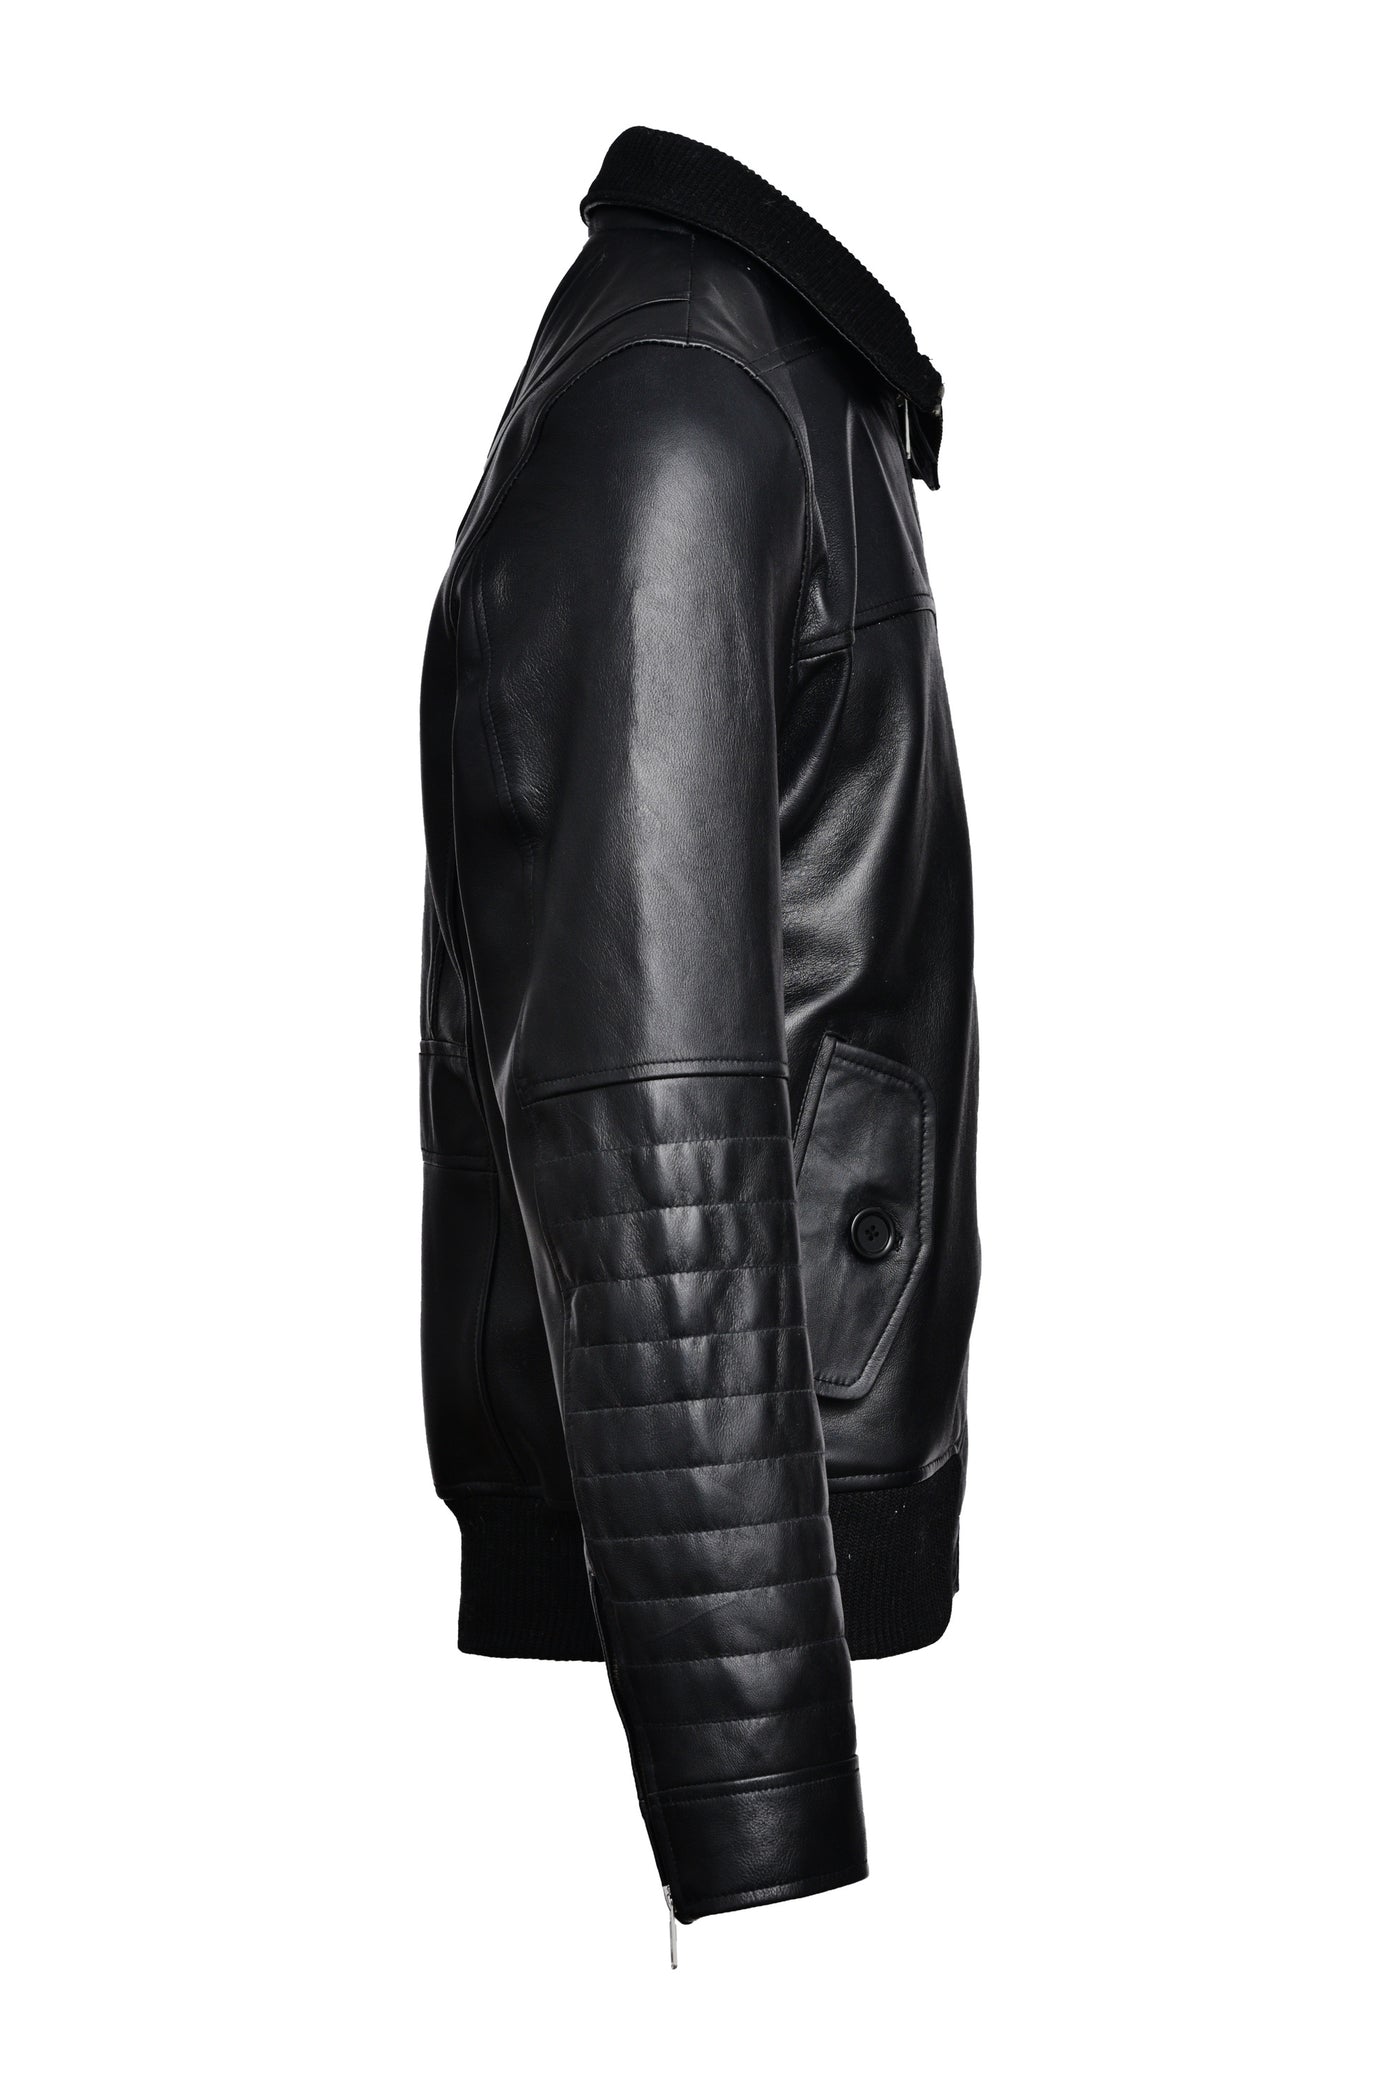 Bomber Black Leather Jacket Online